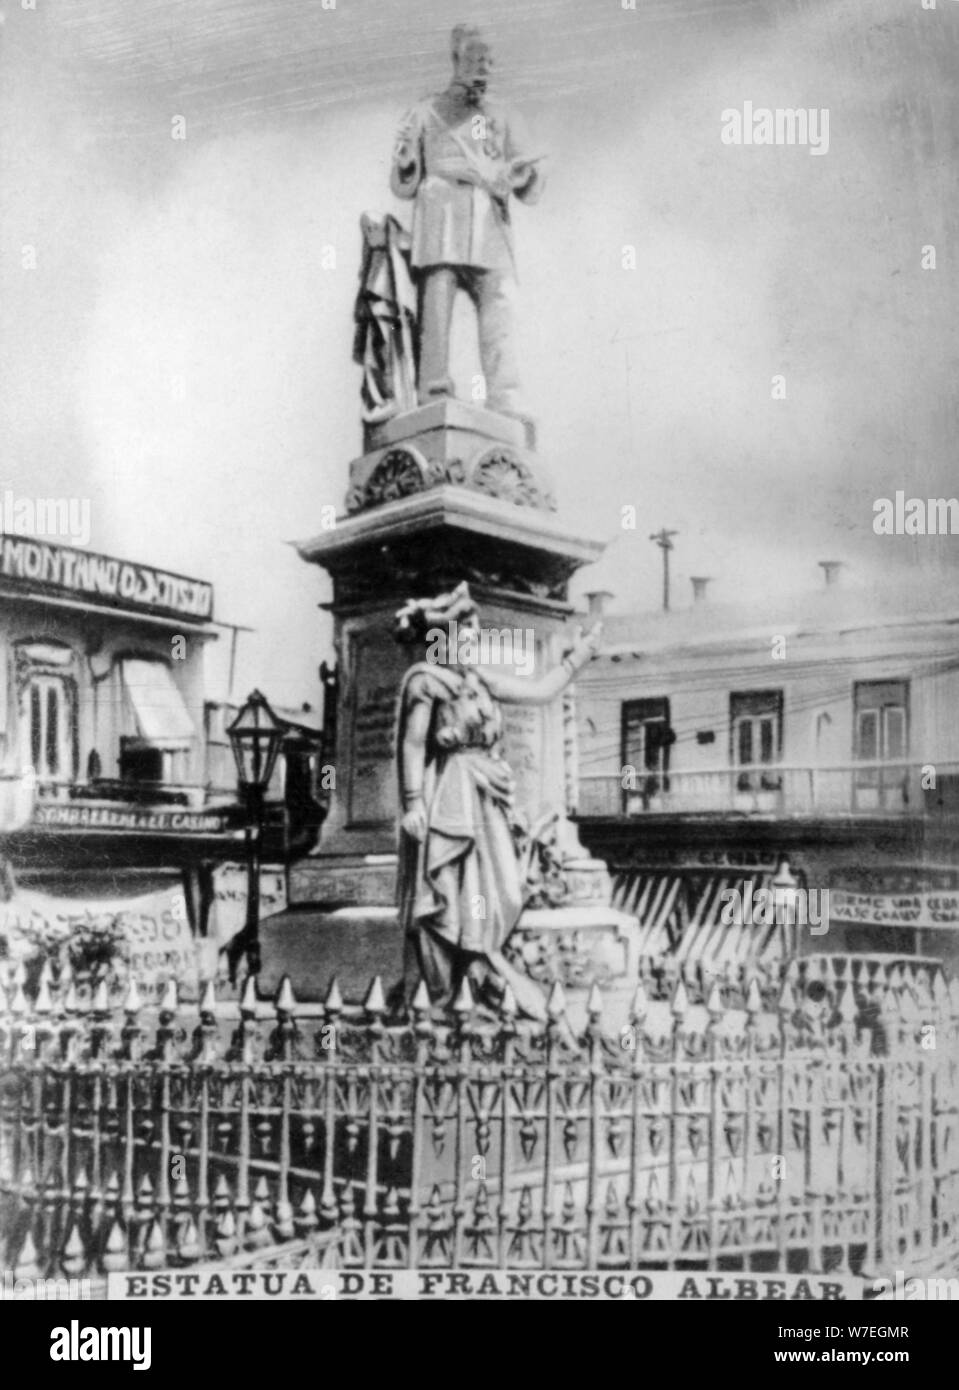 Statue de Francisco Albear, (1890), années 1920. Artiste : Inconnu Banque D'Images